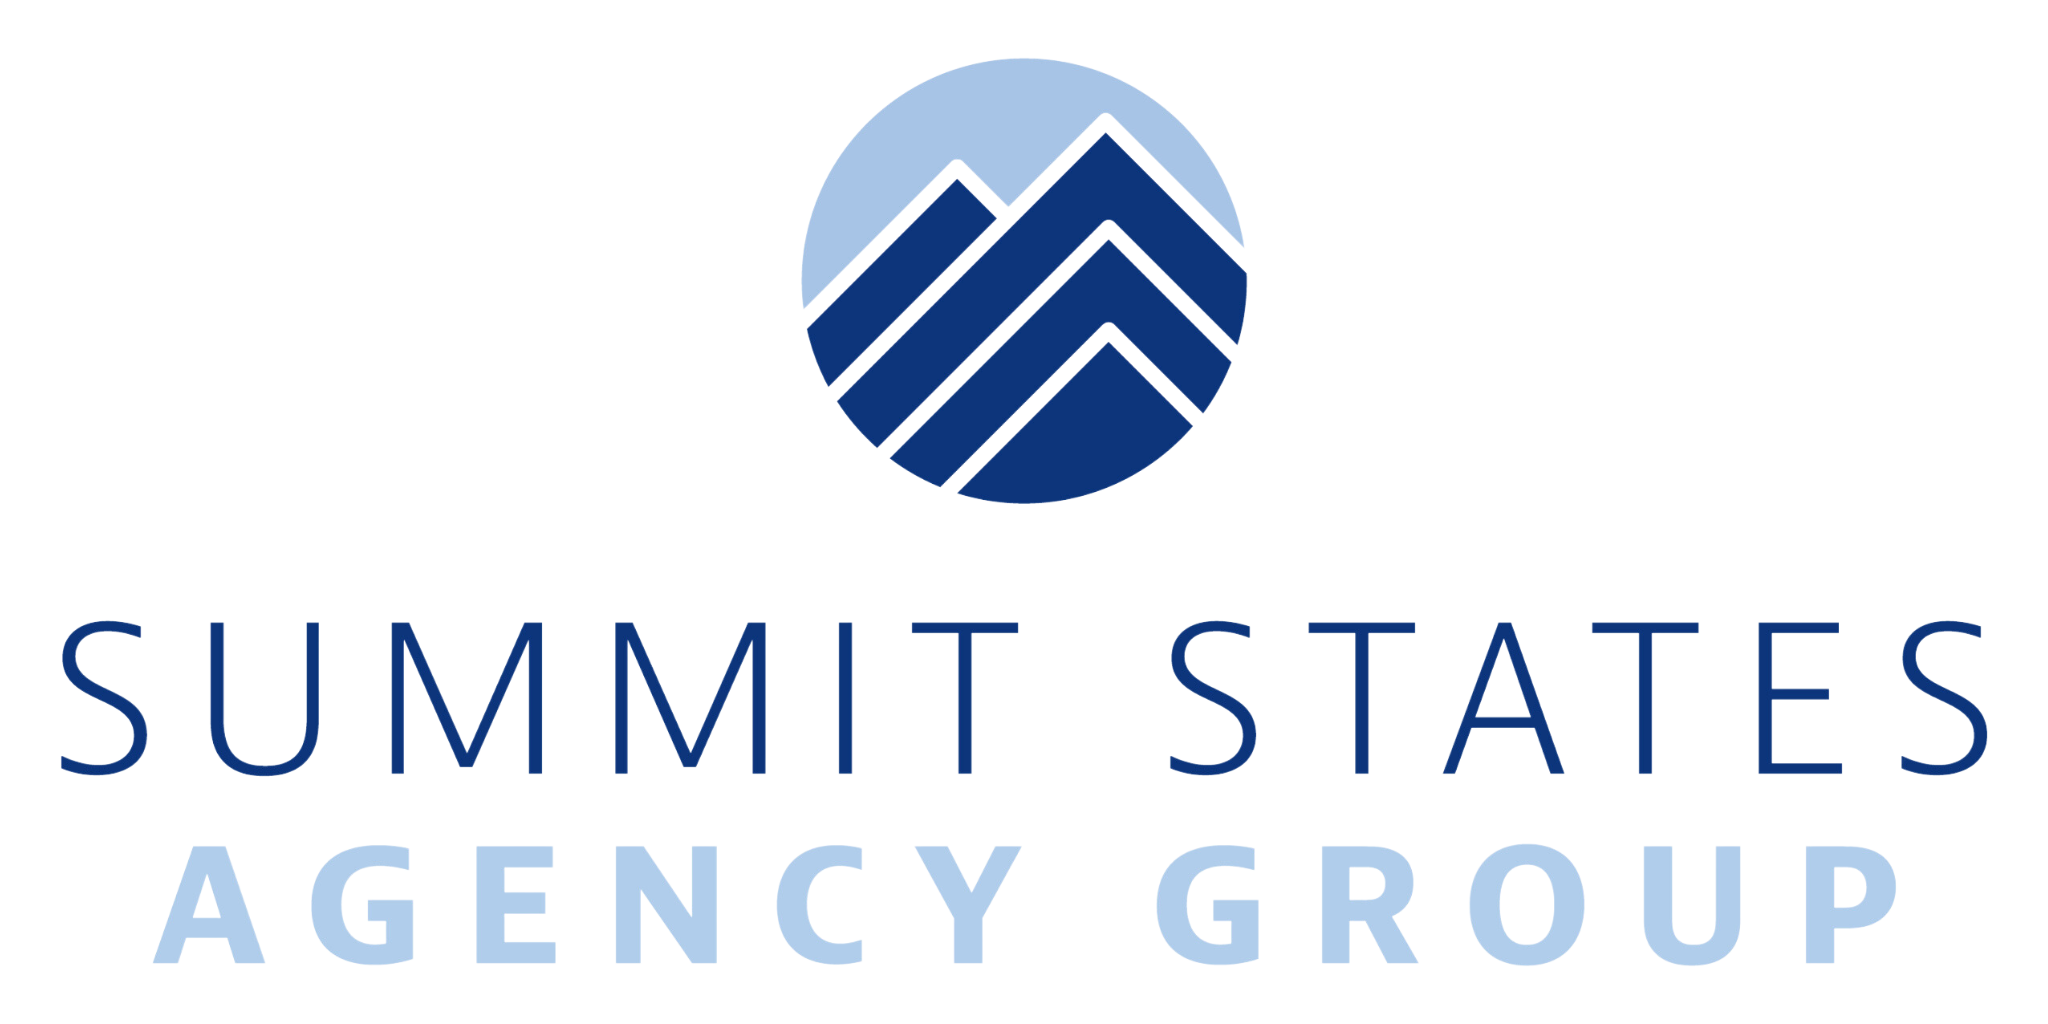 Summit States